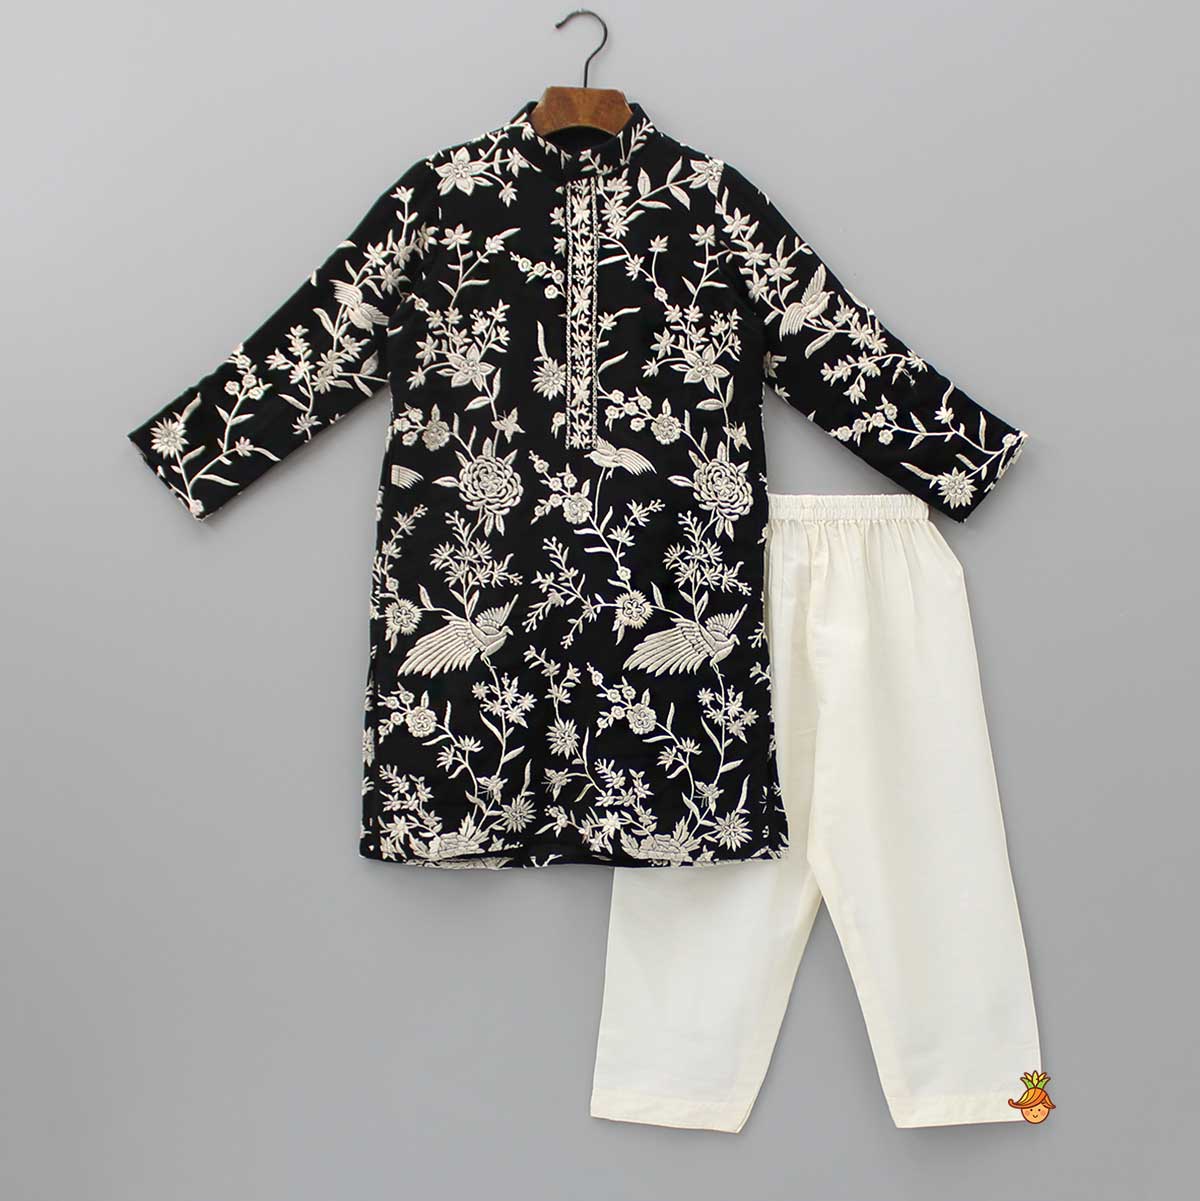 Stunning Embroidered Georgette Black Kurta With Pyjama